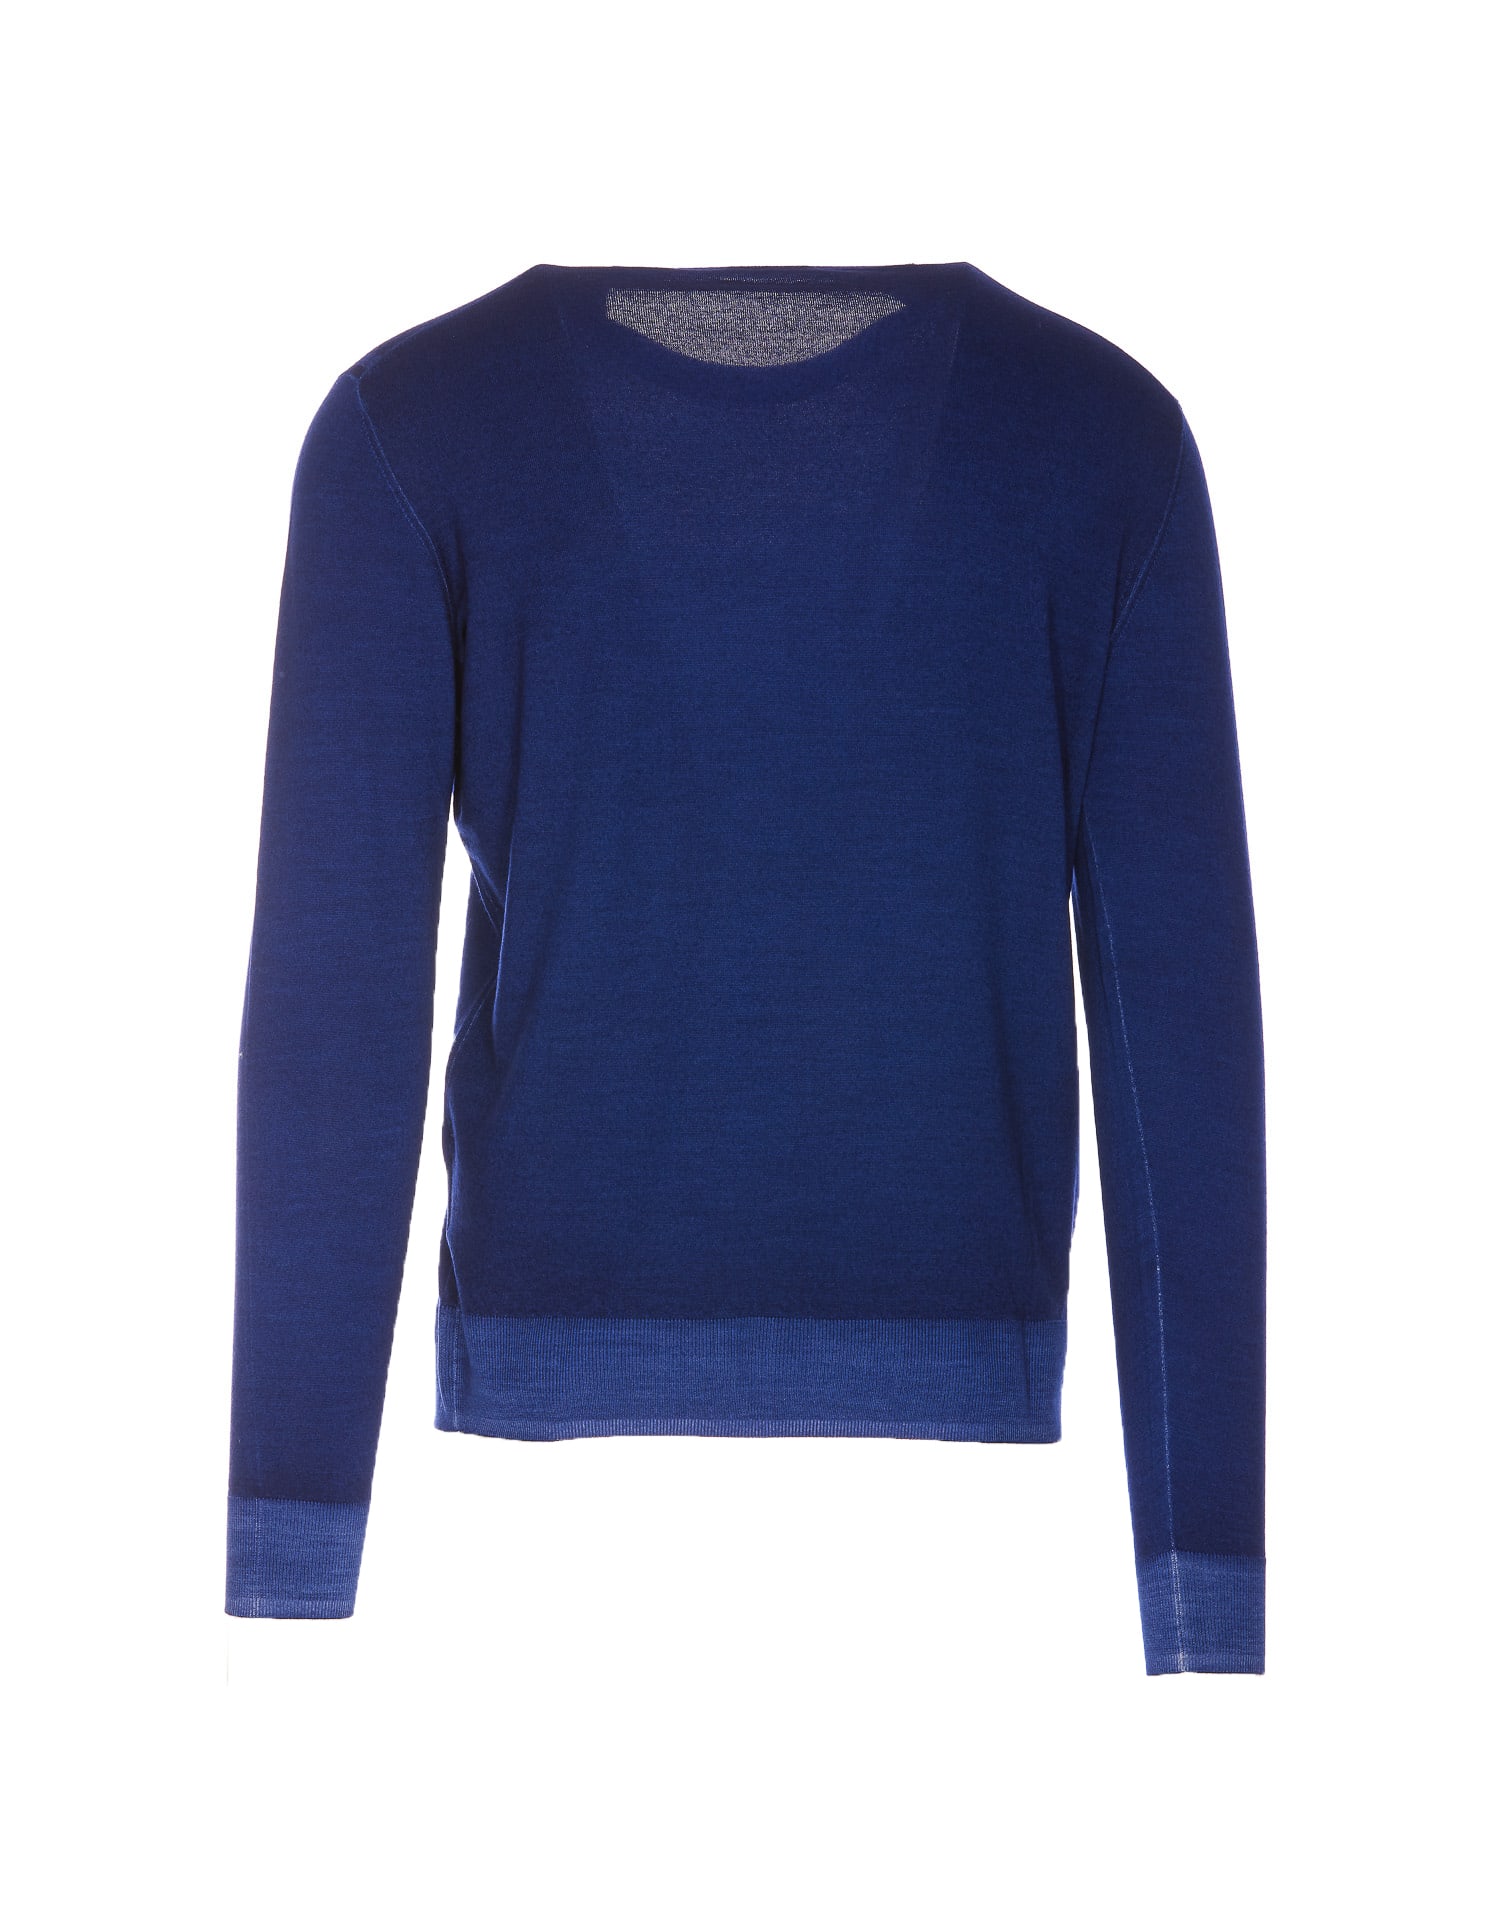 Shop Paolo Pecora Sweater